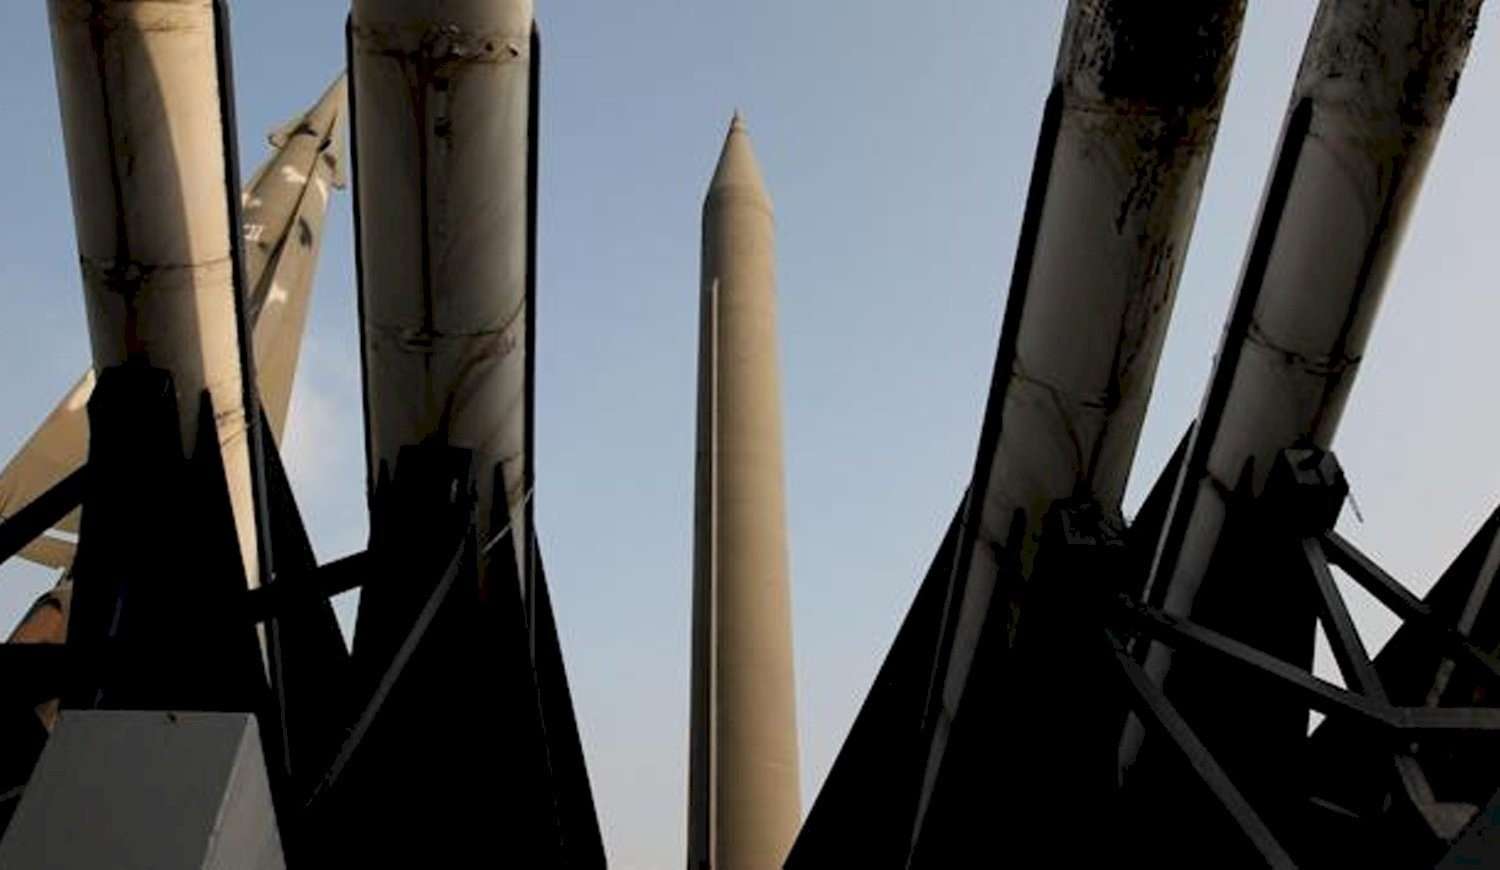 Crece la preocupación por el lanzamiento de misiles por parte del gobierno de Corea del Norte.